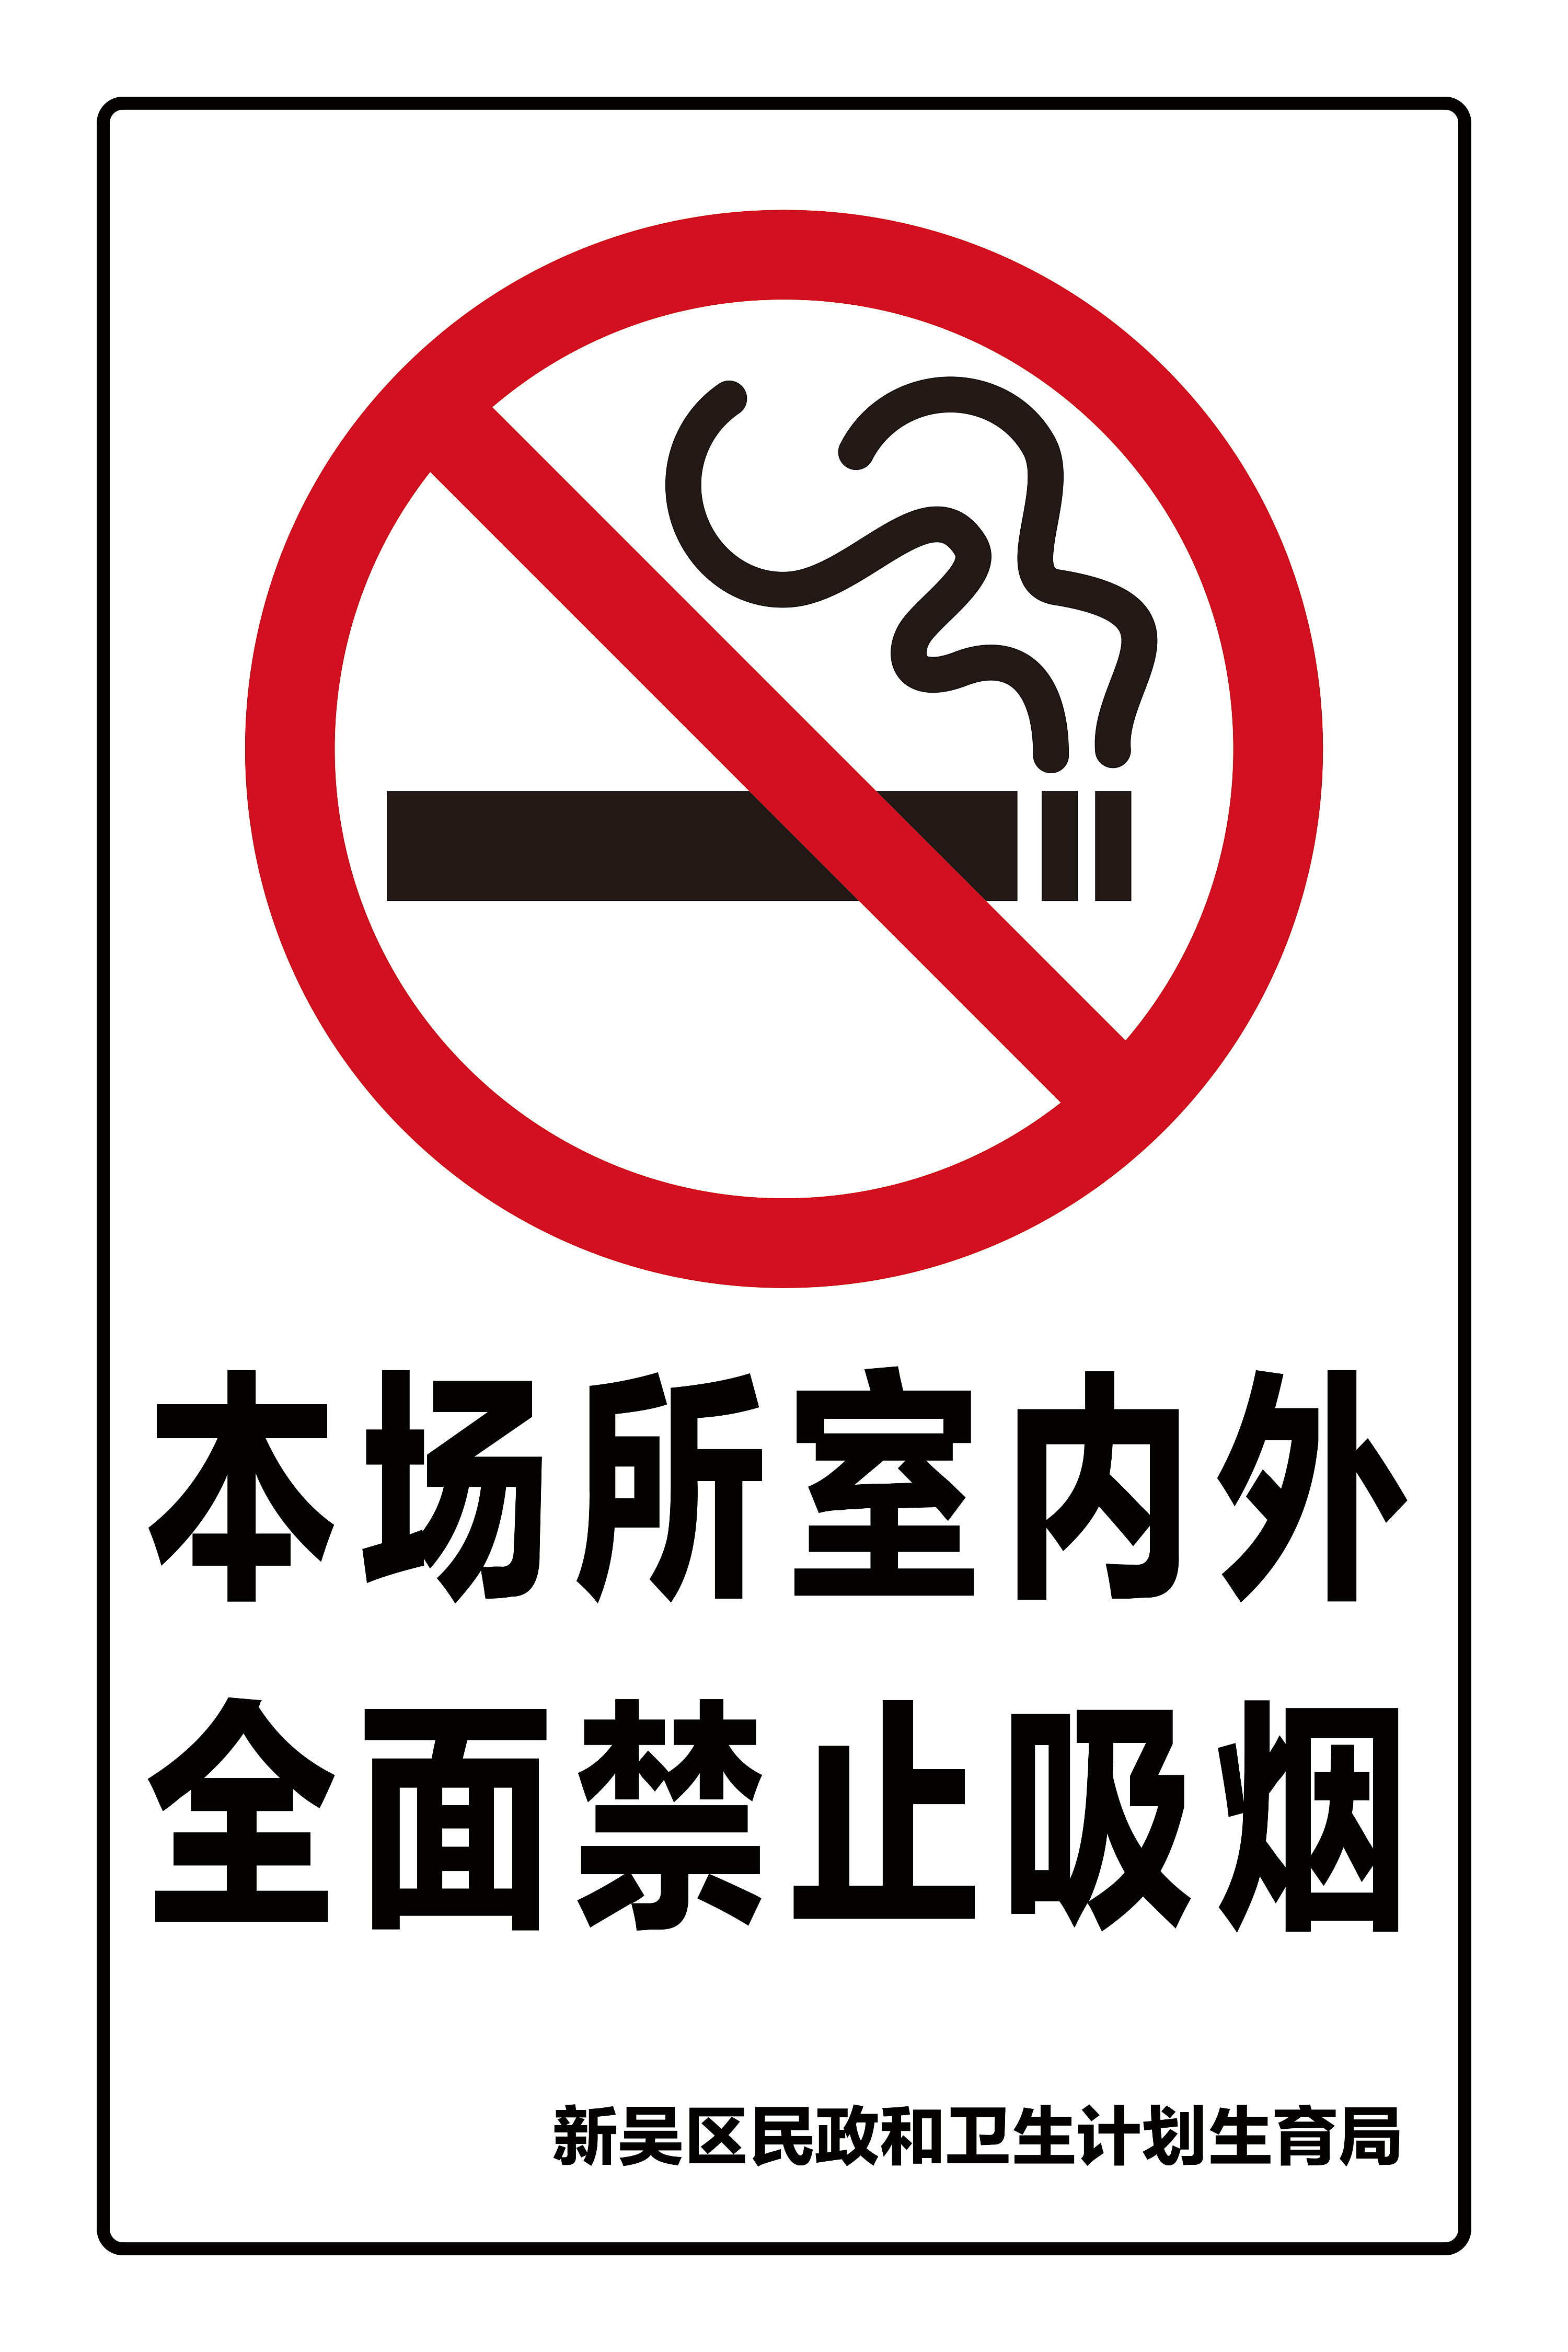 禁止吸烟标识照片图片